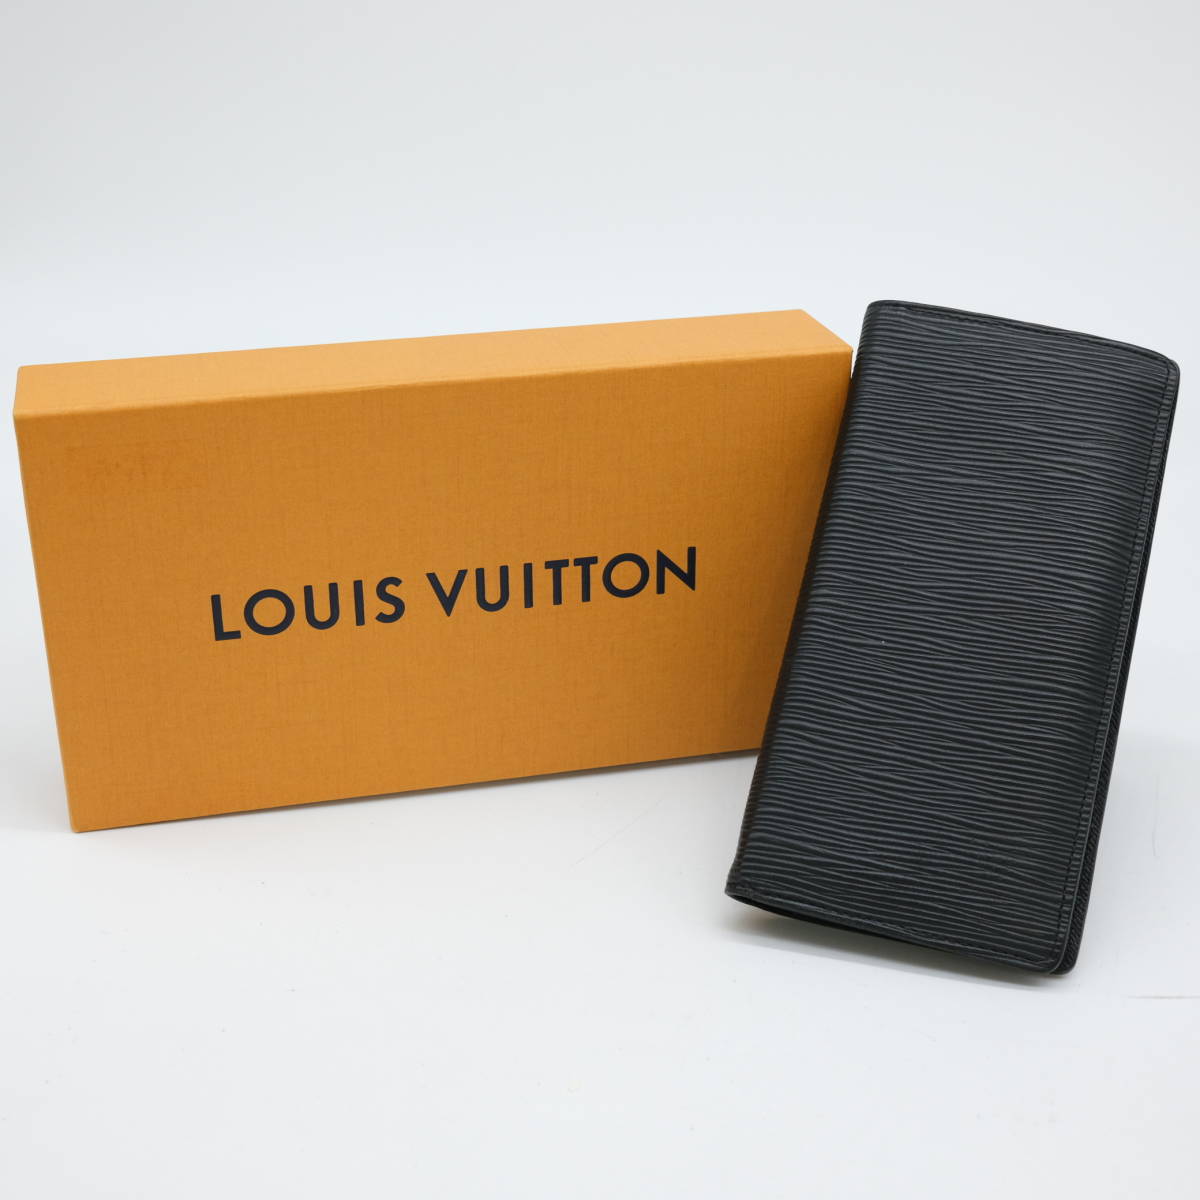 LOUIS VUITTON ヴィトン エピ ポルトフォイユ ブラザ M60622 長財布 